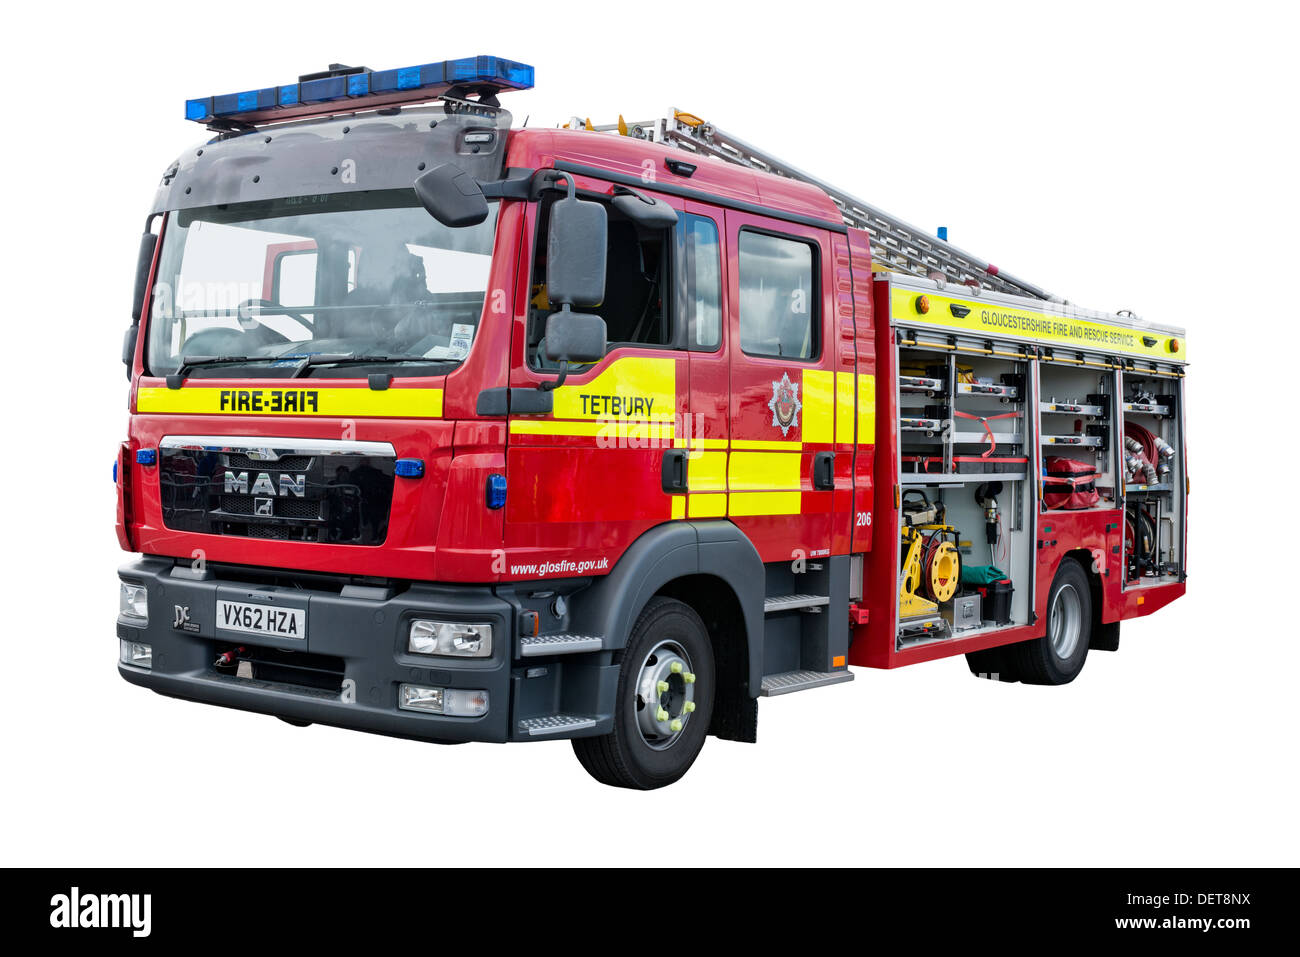 Une coupe d'un moteur utilisé par le feu à l'homme de la station Tetbury Gloucestershire fire brigade, UK Banque D'Images